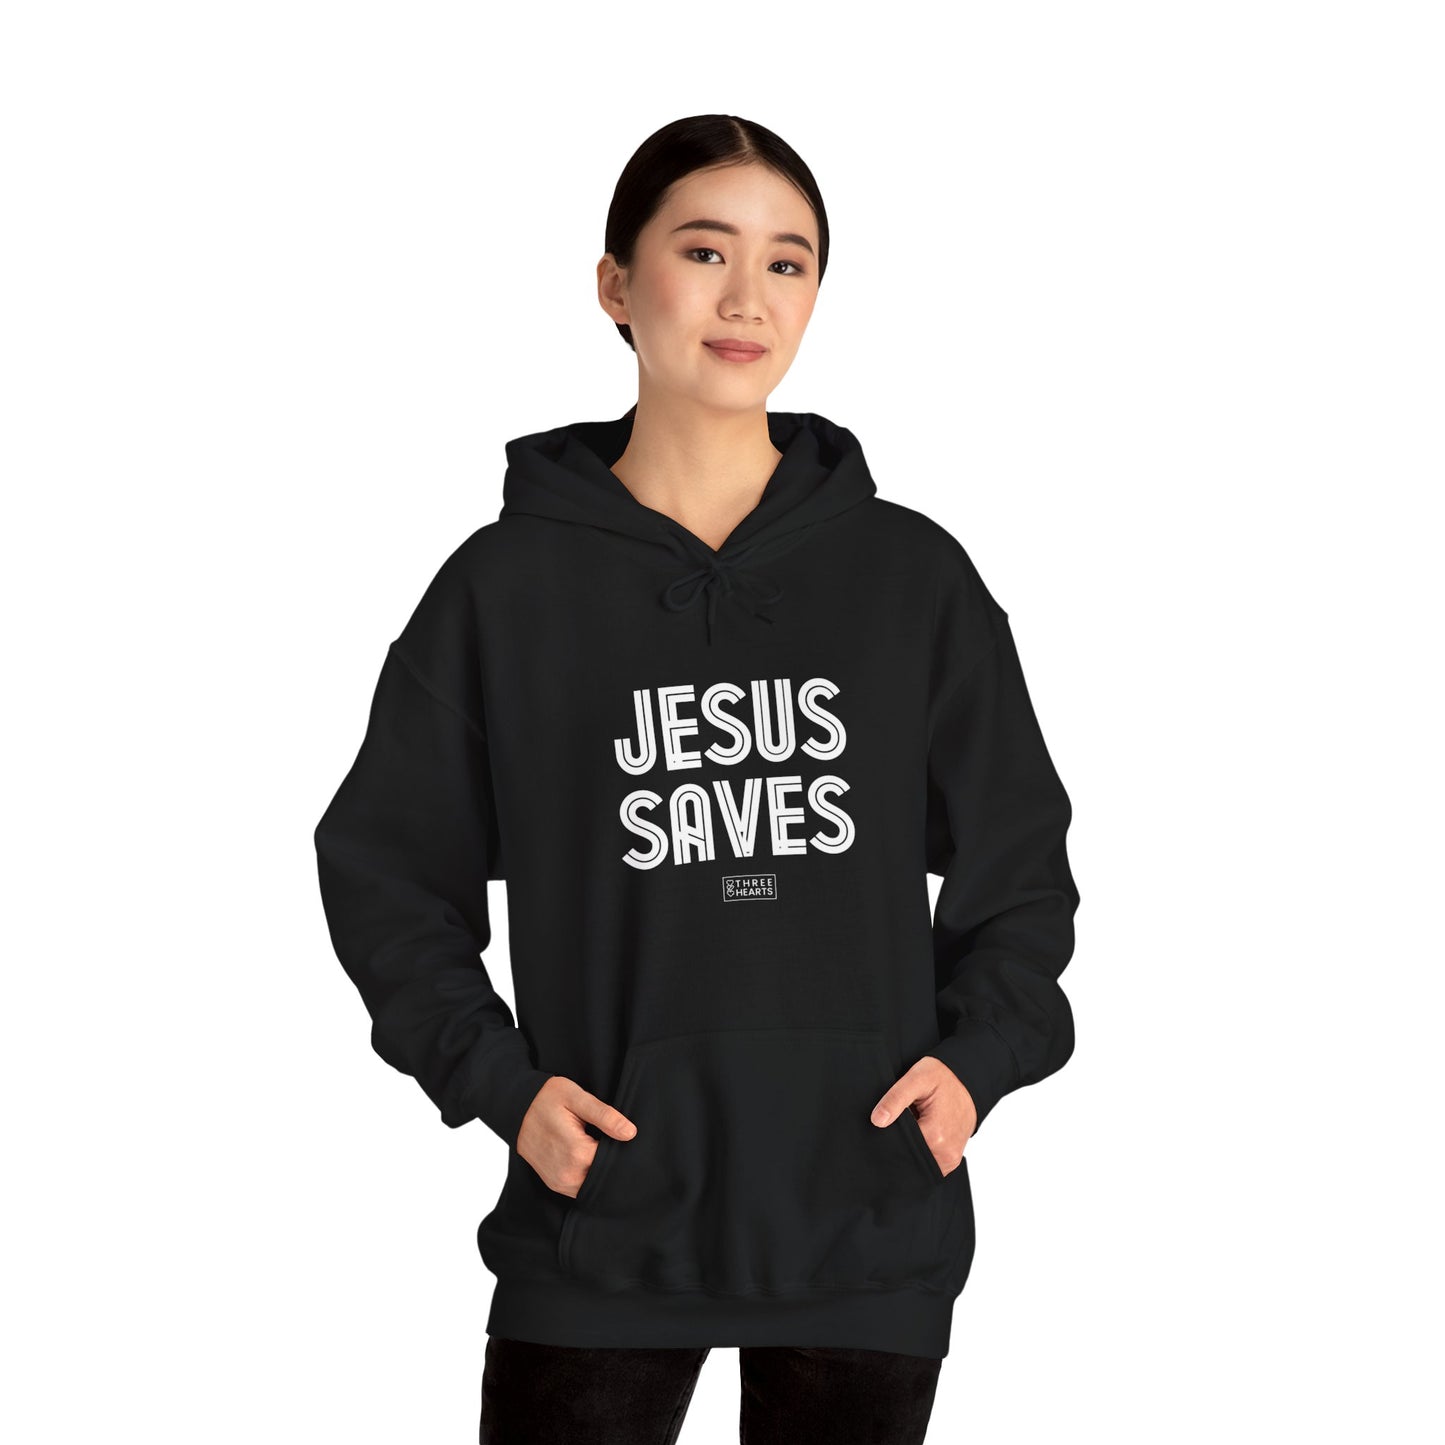 Jesus Saves Unisex Hooded Sweatshirt